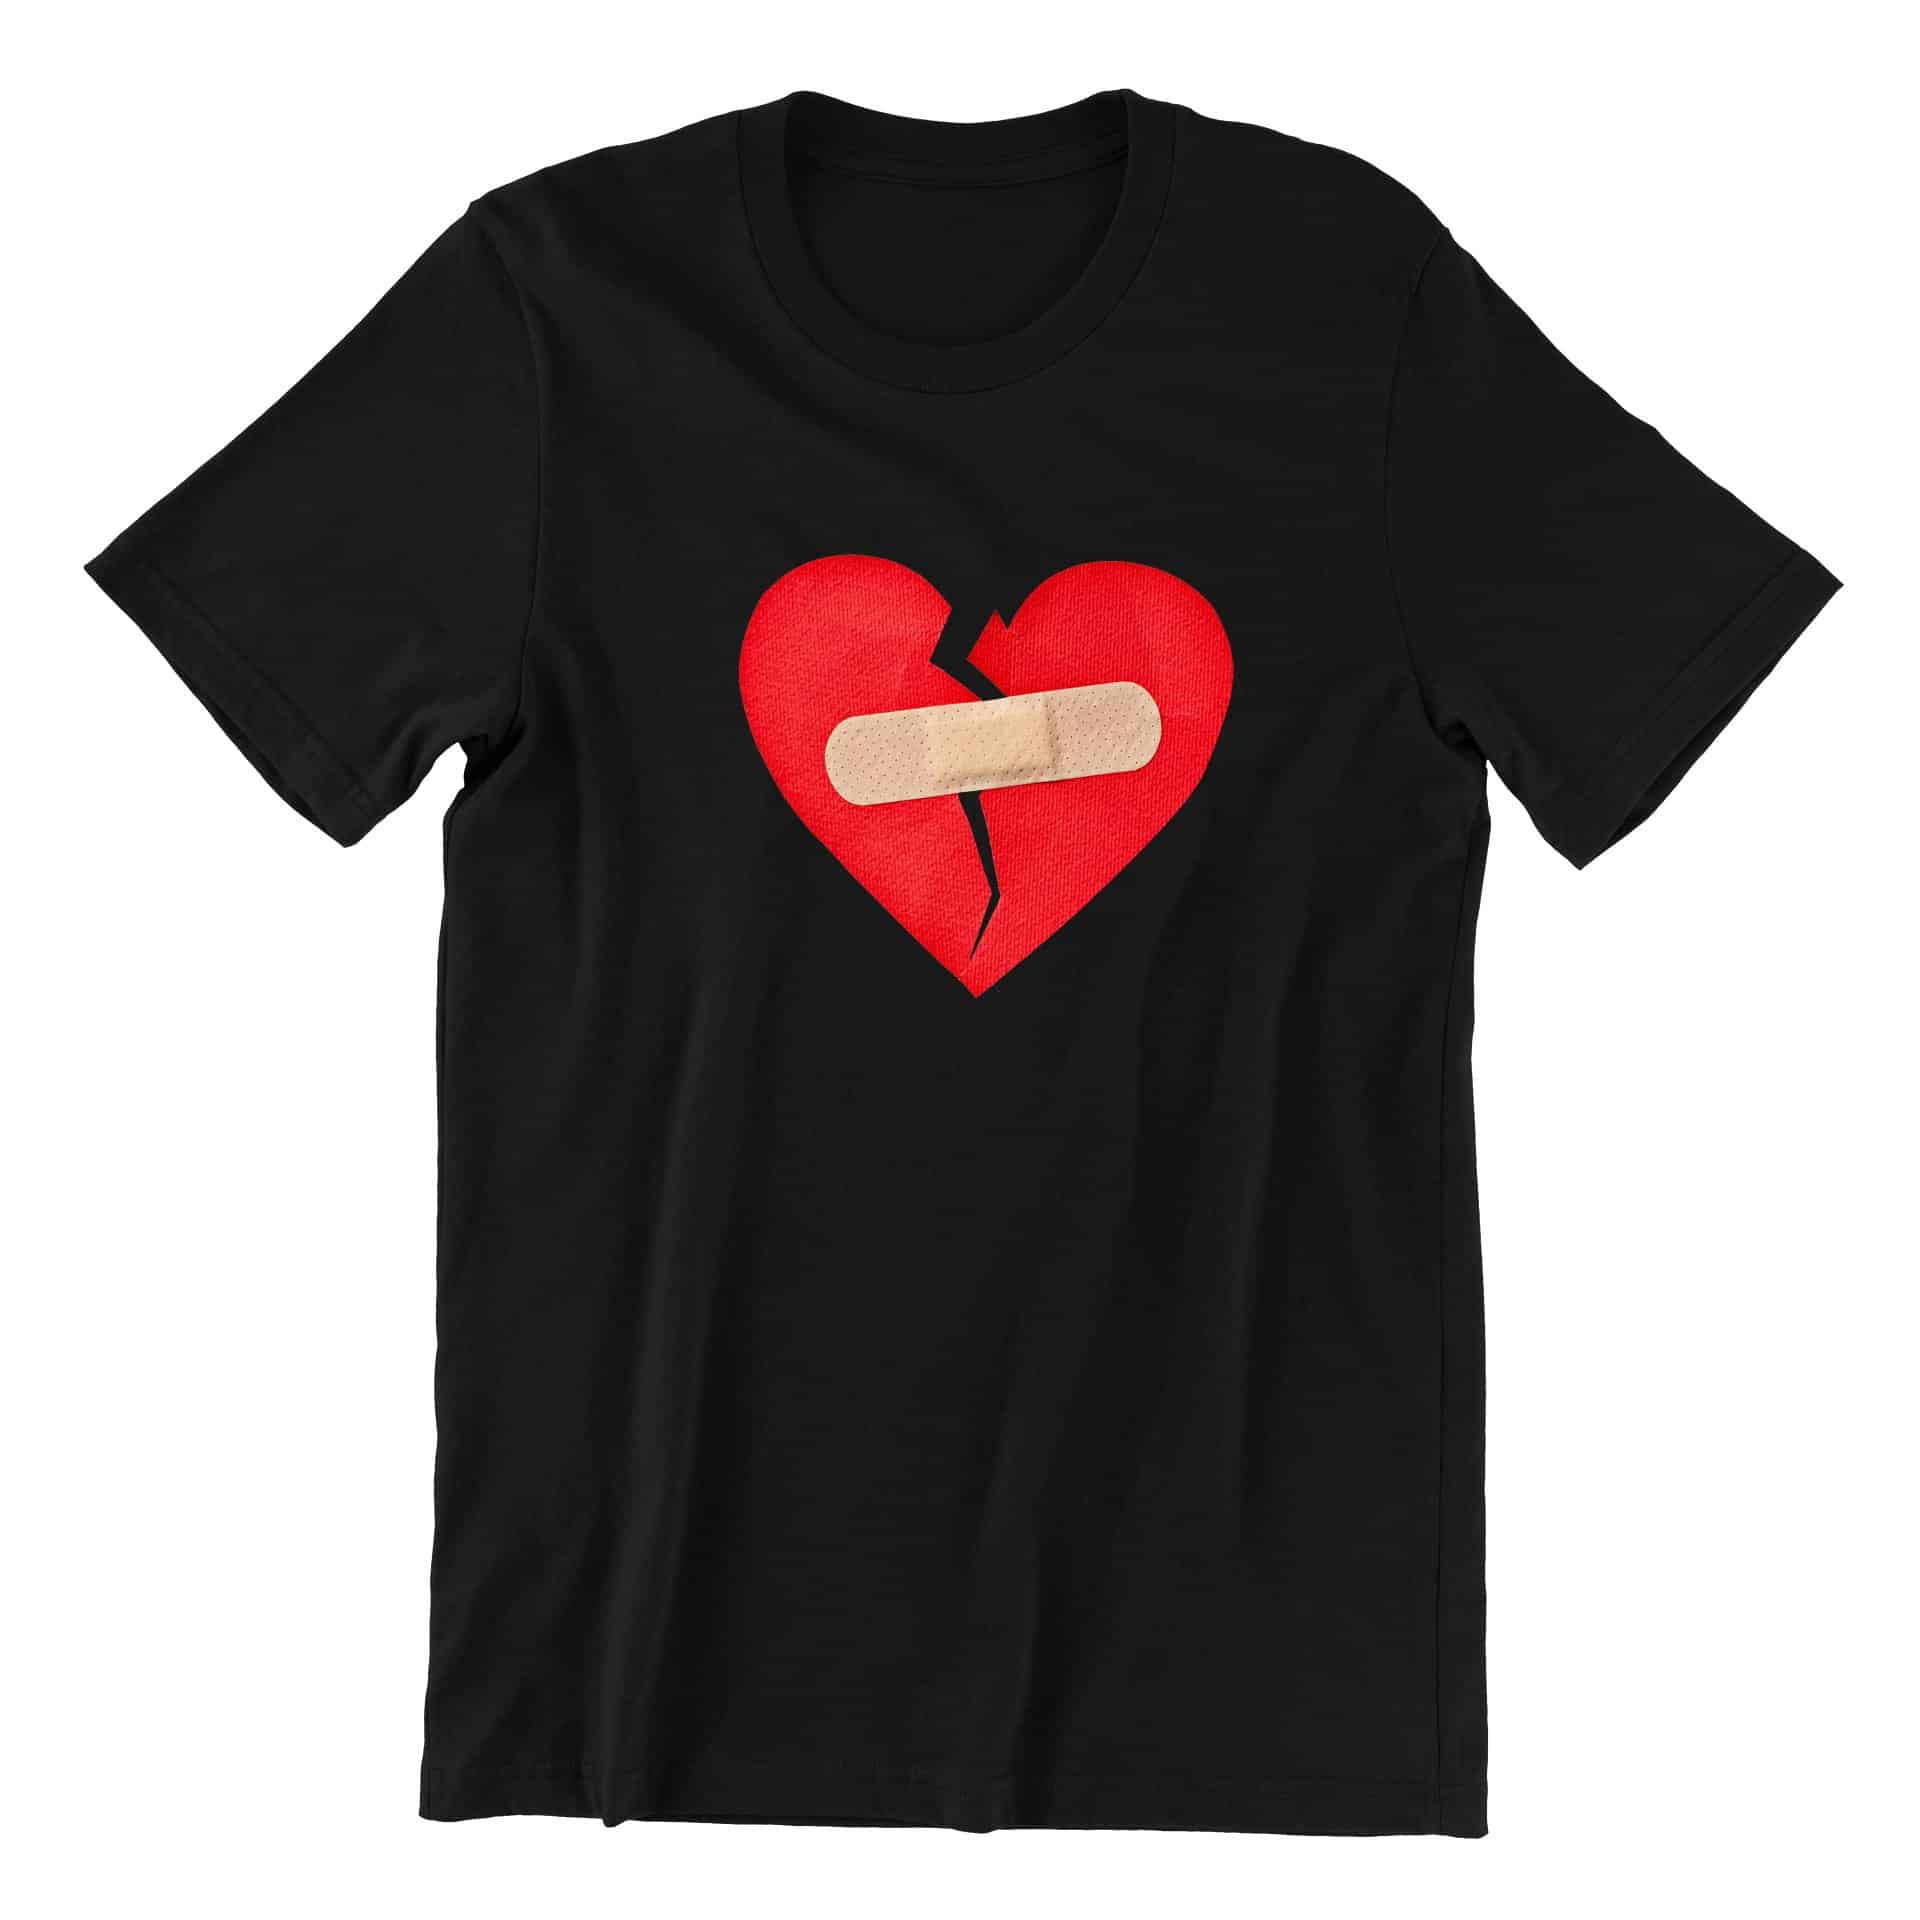 Broken Heart Short Sleeve T-shirt